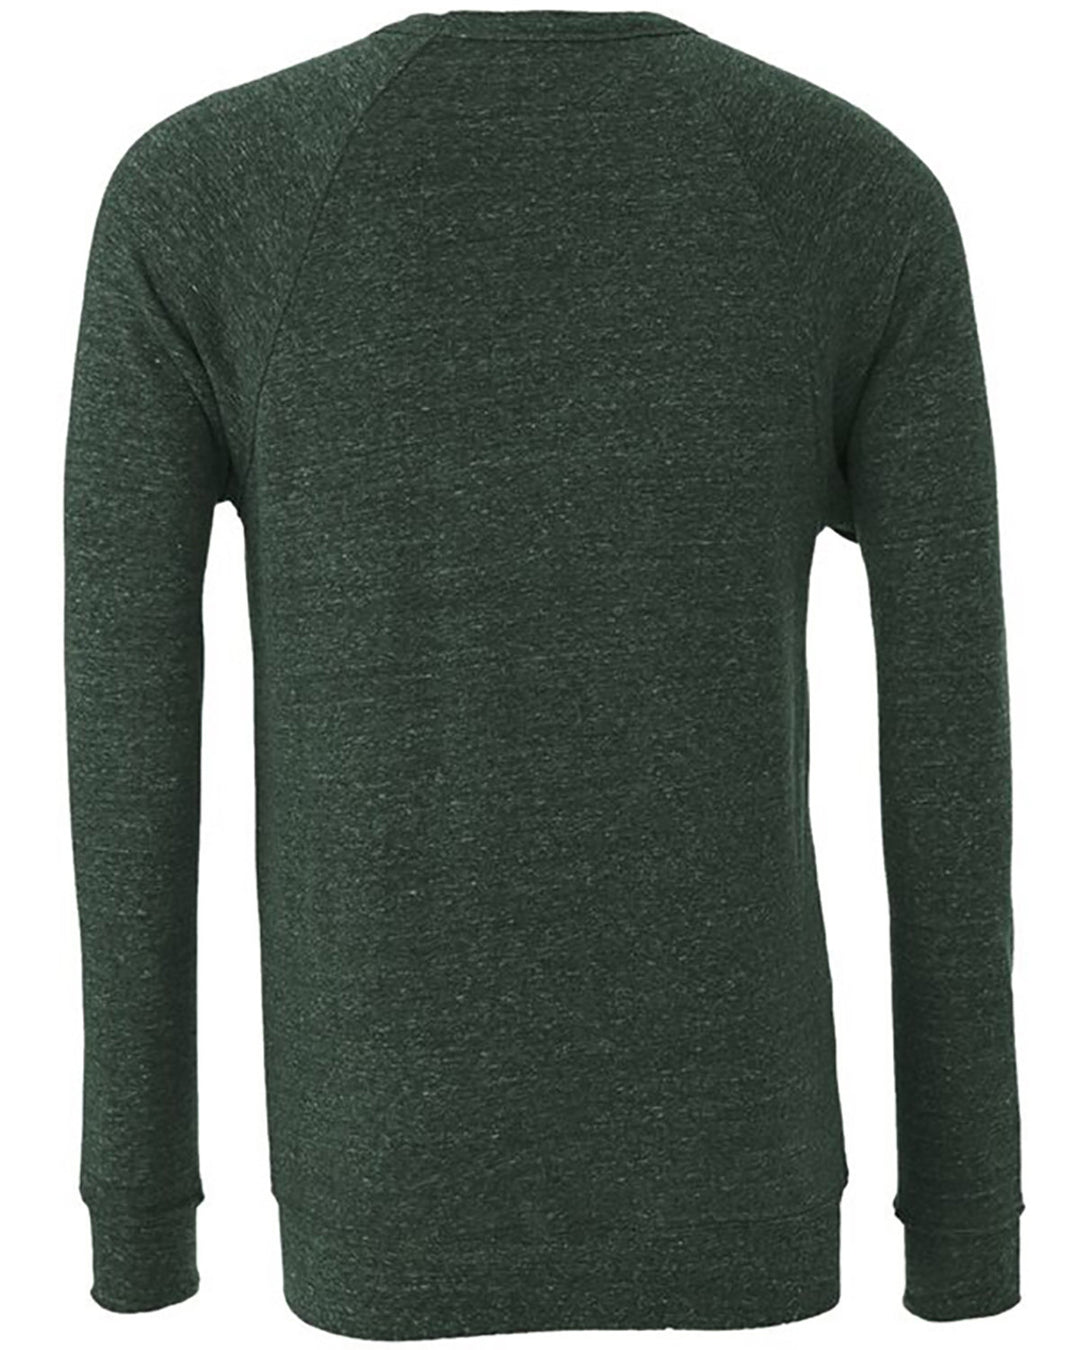 Unisex Sponge Fleece Crewneck Sweatshirt (3901)